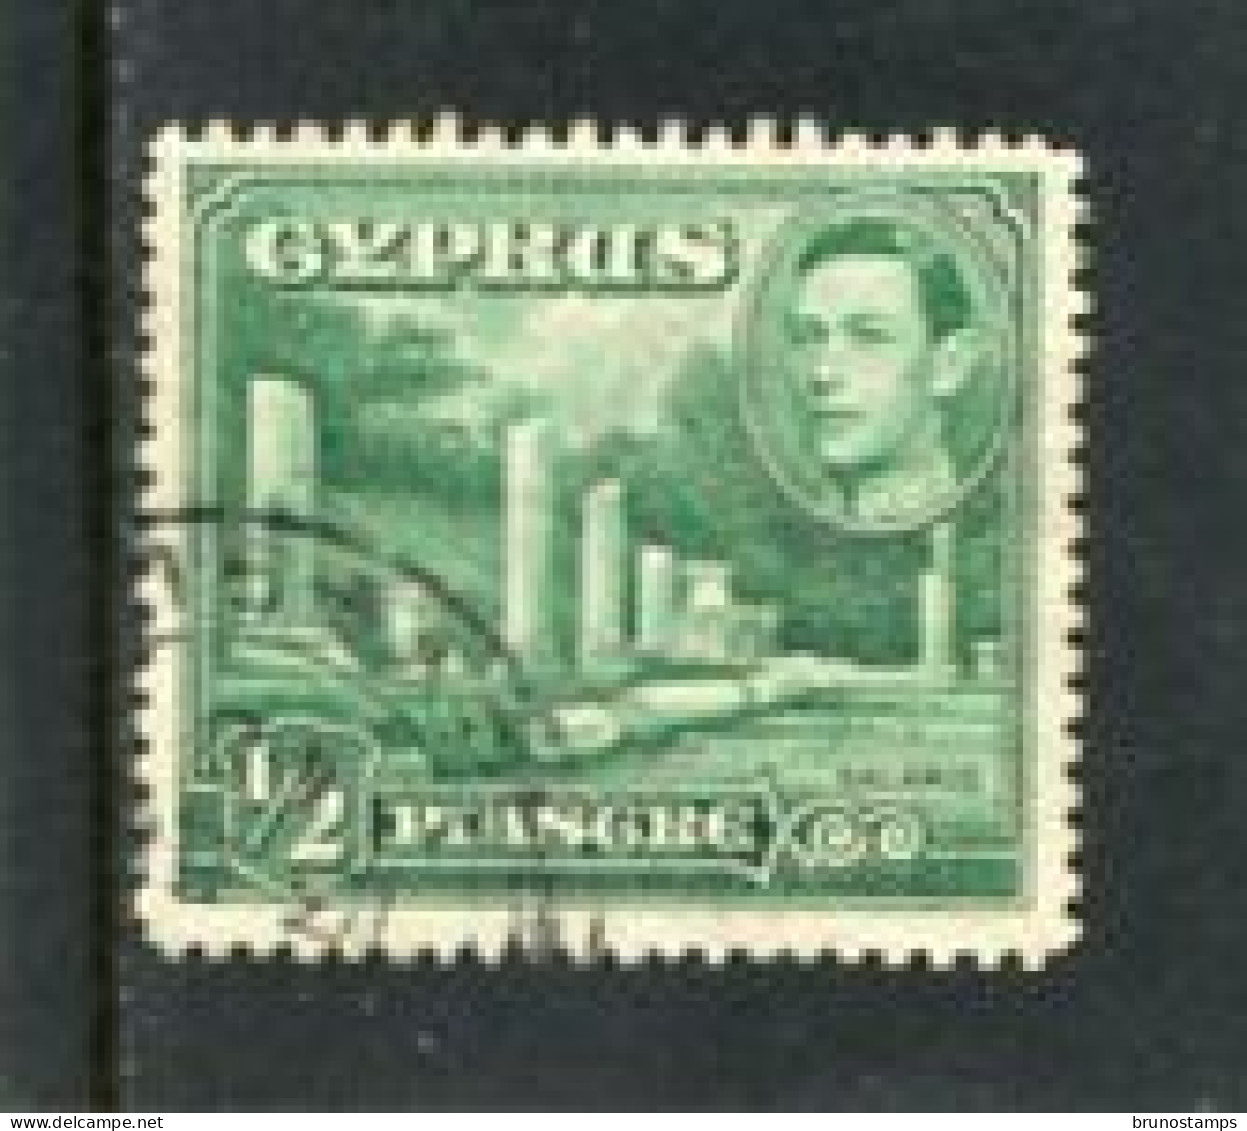 CYPRUS - 1938   GEORGE VI  1/2 Pi  FINE USED - Cyprus (...-1960)